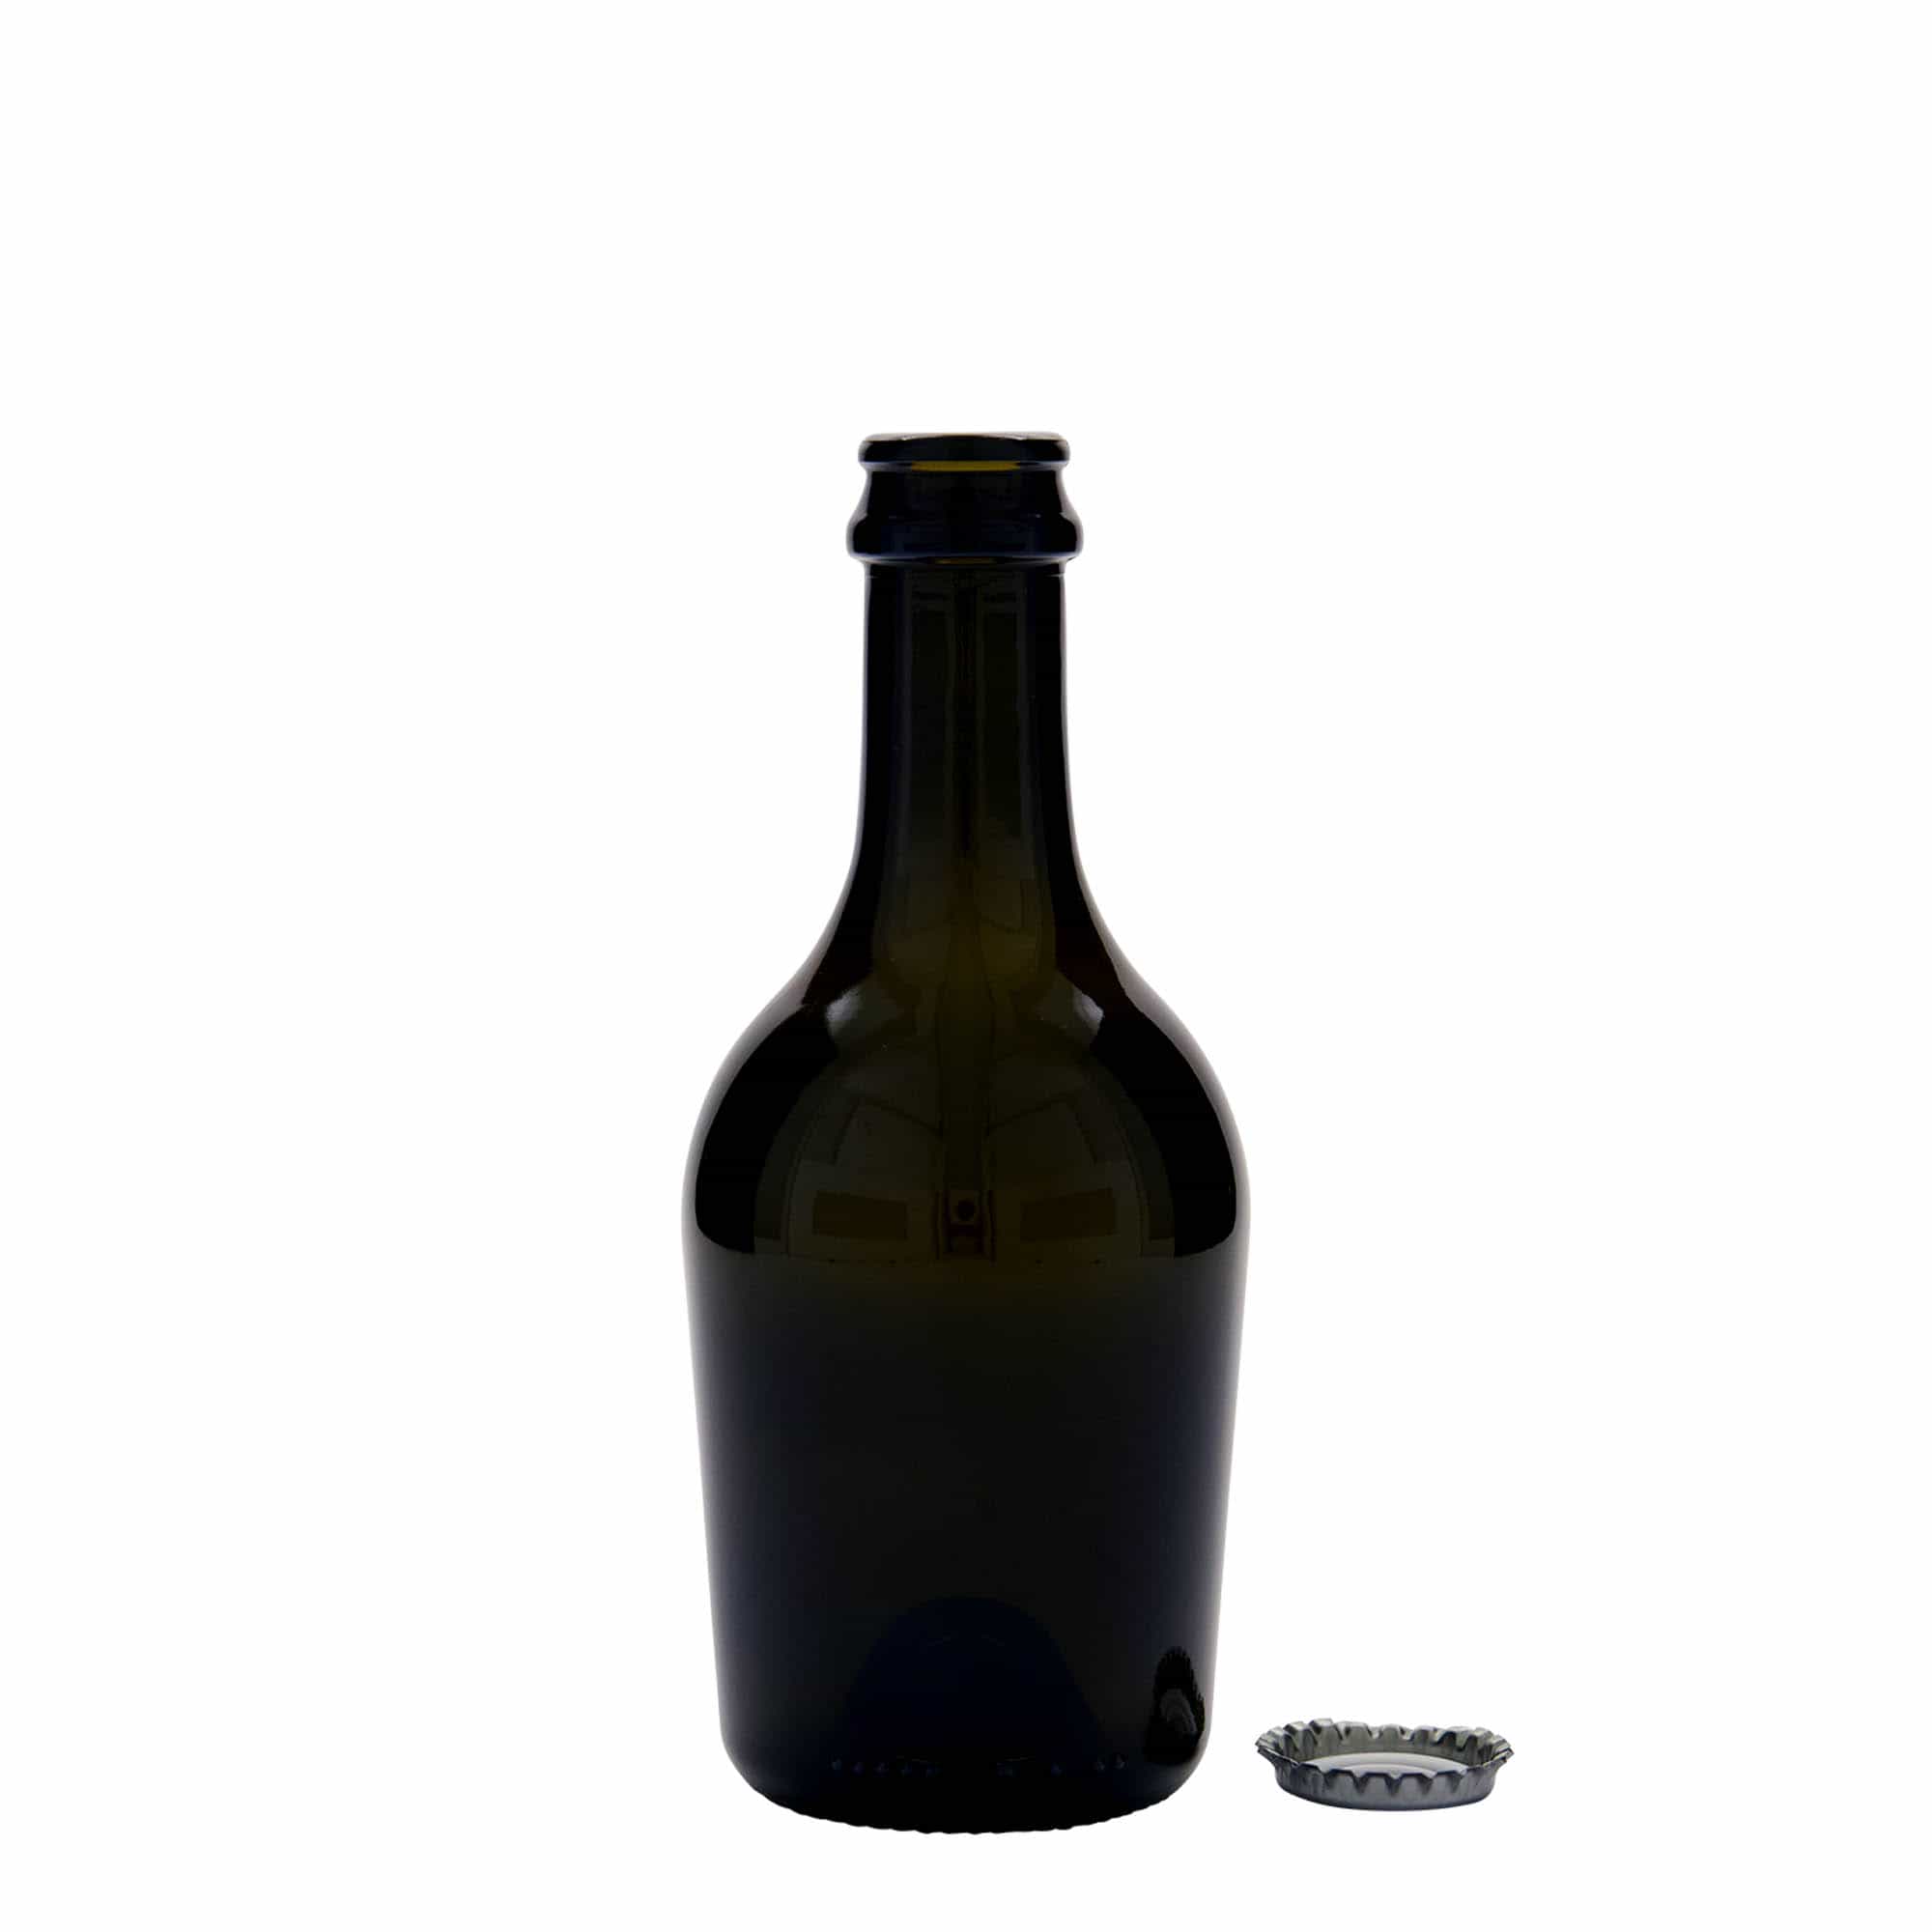 330 ml butelka do wina/szampana 'Butterfly', szkło, kolor zielony antyczny, zamknięcie: kapsel